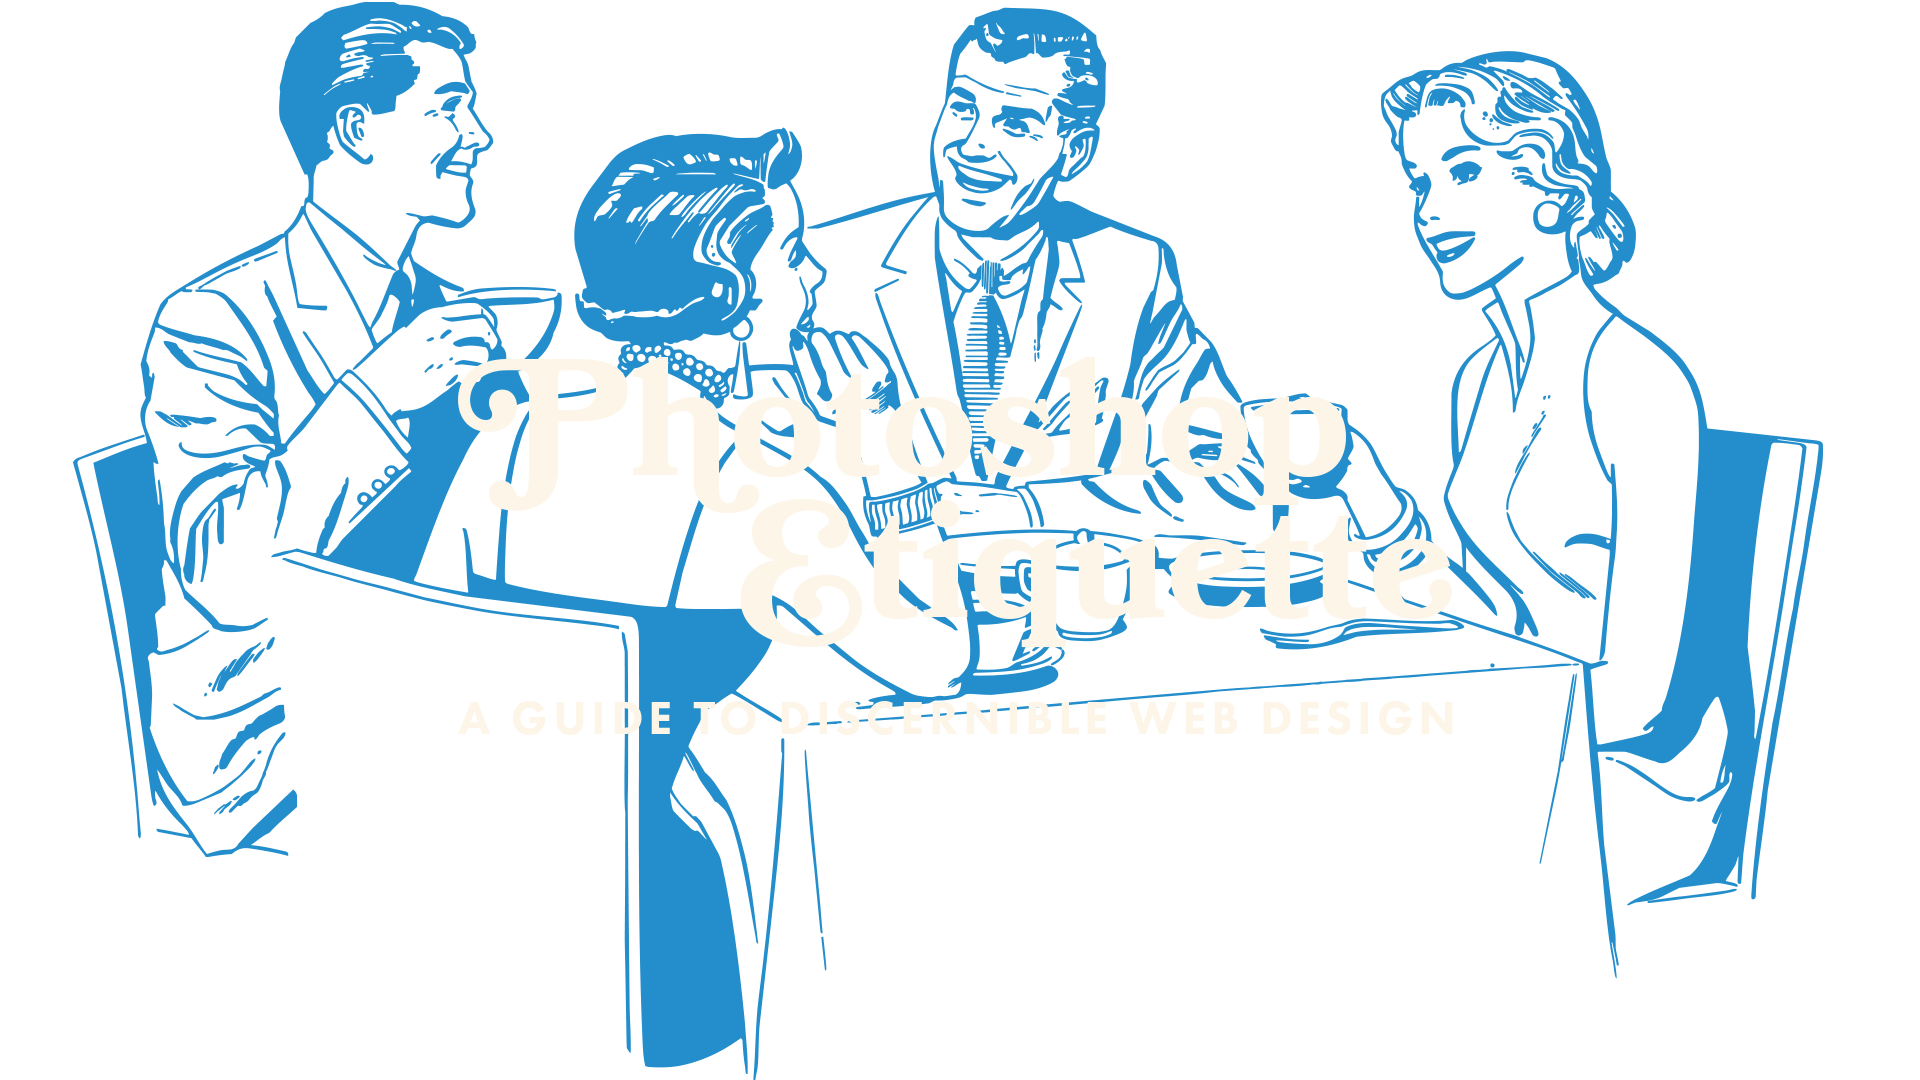 Photoshop Etiquette